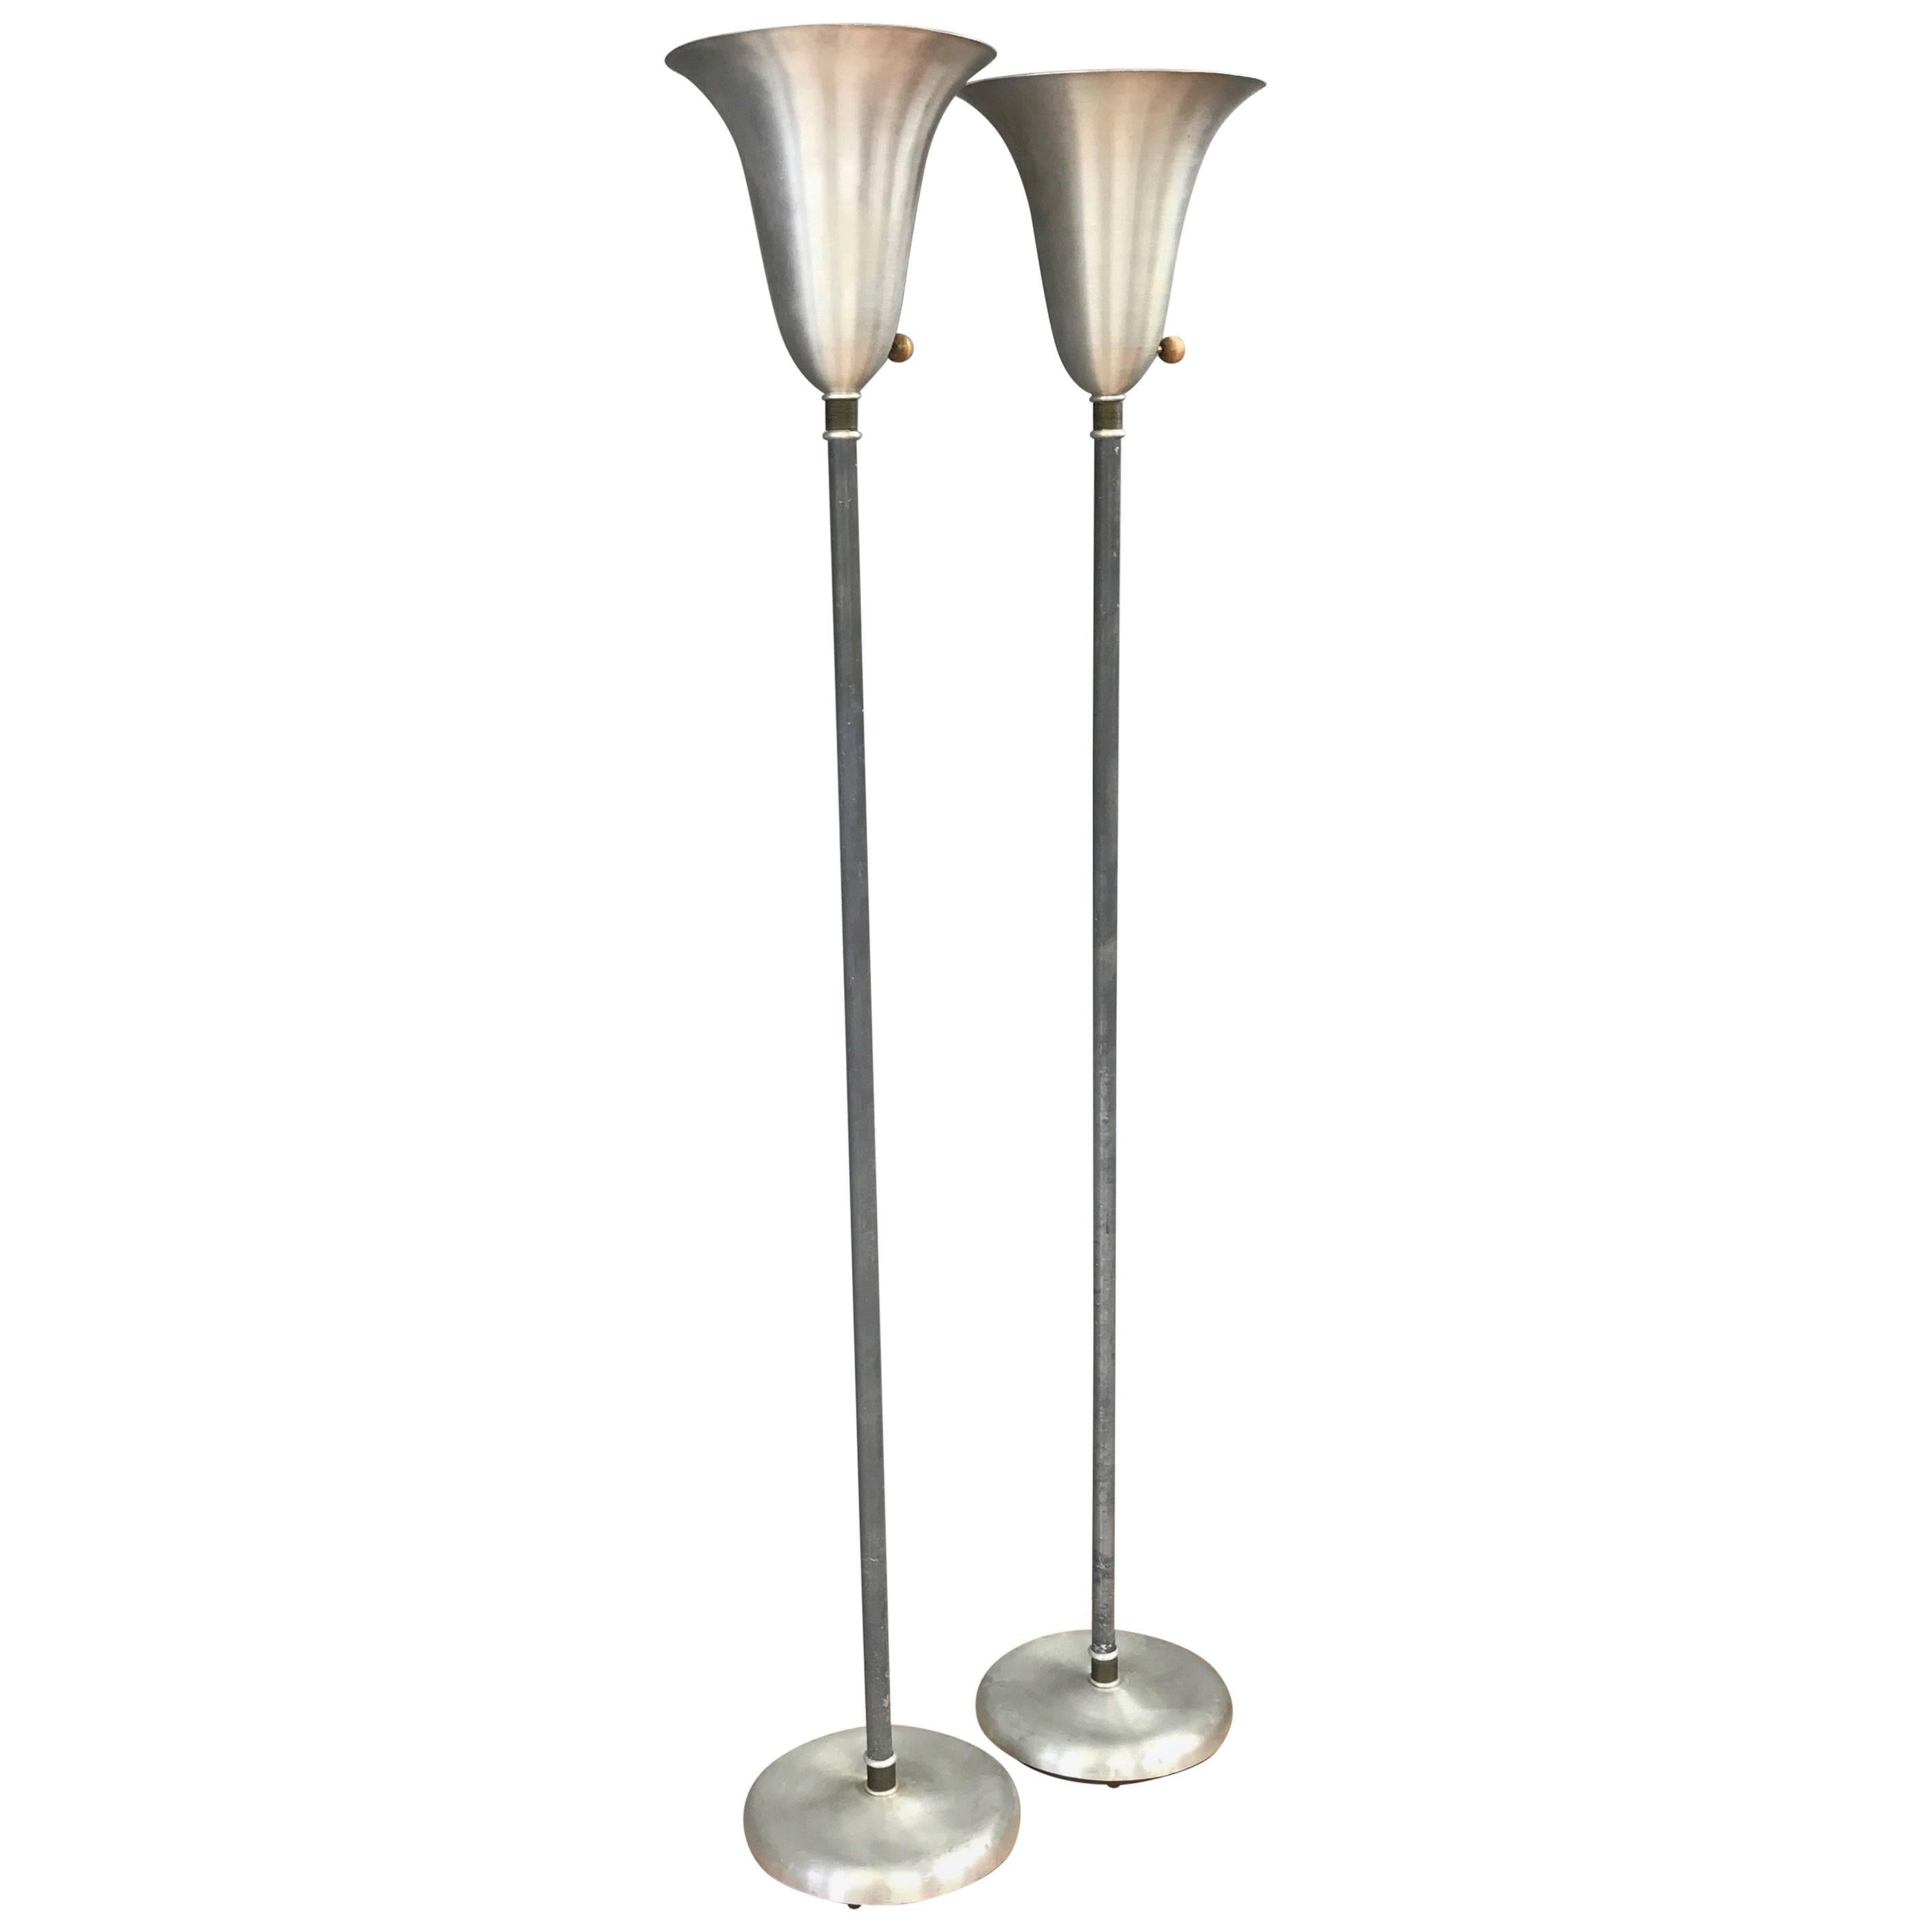 Paire de lampadaires torchères modernes américains en aluminium filé avec détails en laiton par Russel Wright.

Un exemple sans prétention de la capacité singulière de Wright à rationaliser et à démocratiser l'esthétique et les matériaux de l'Art